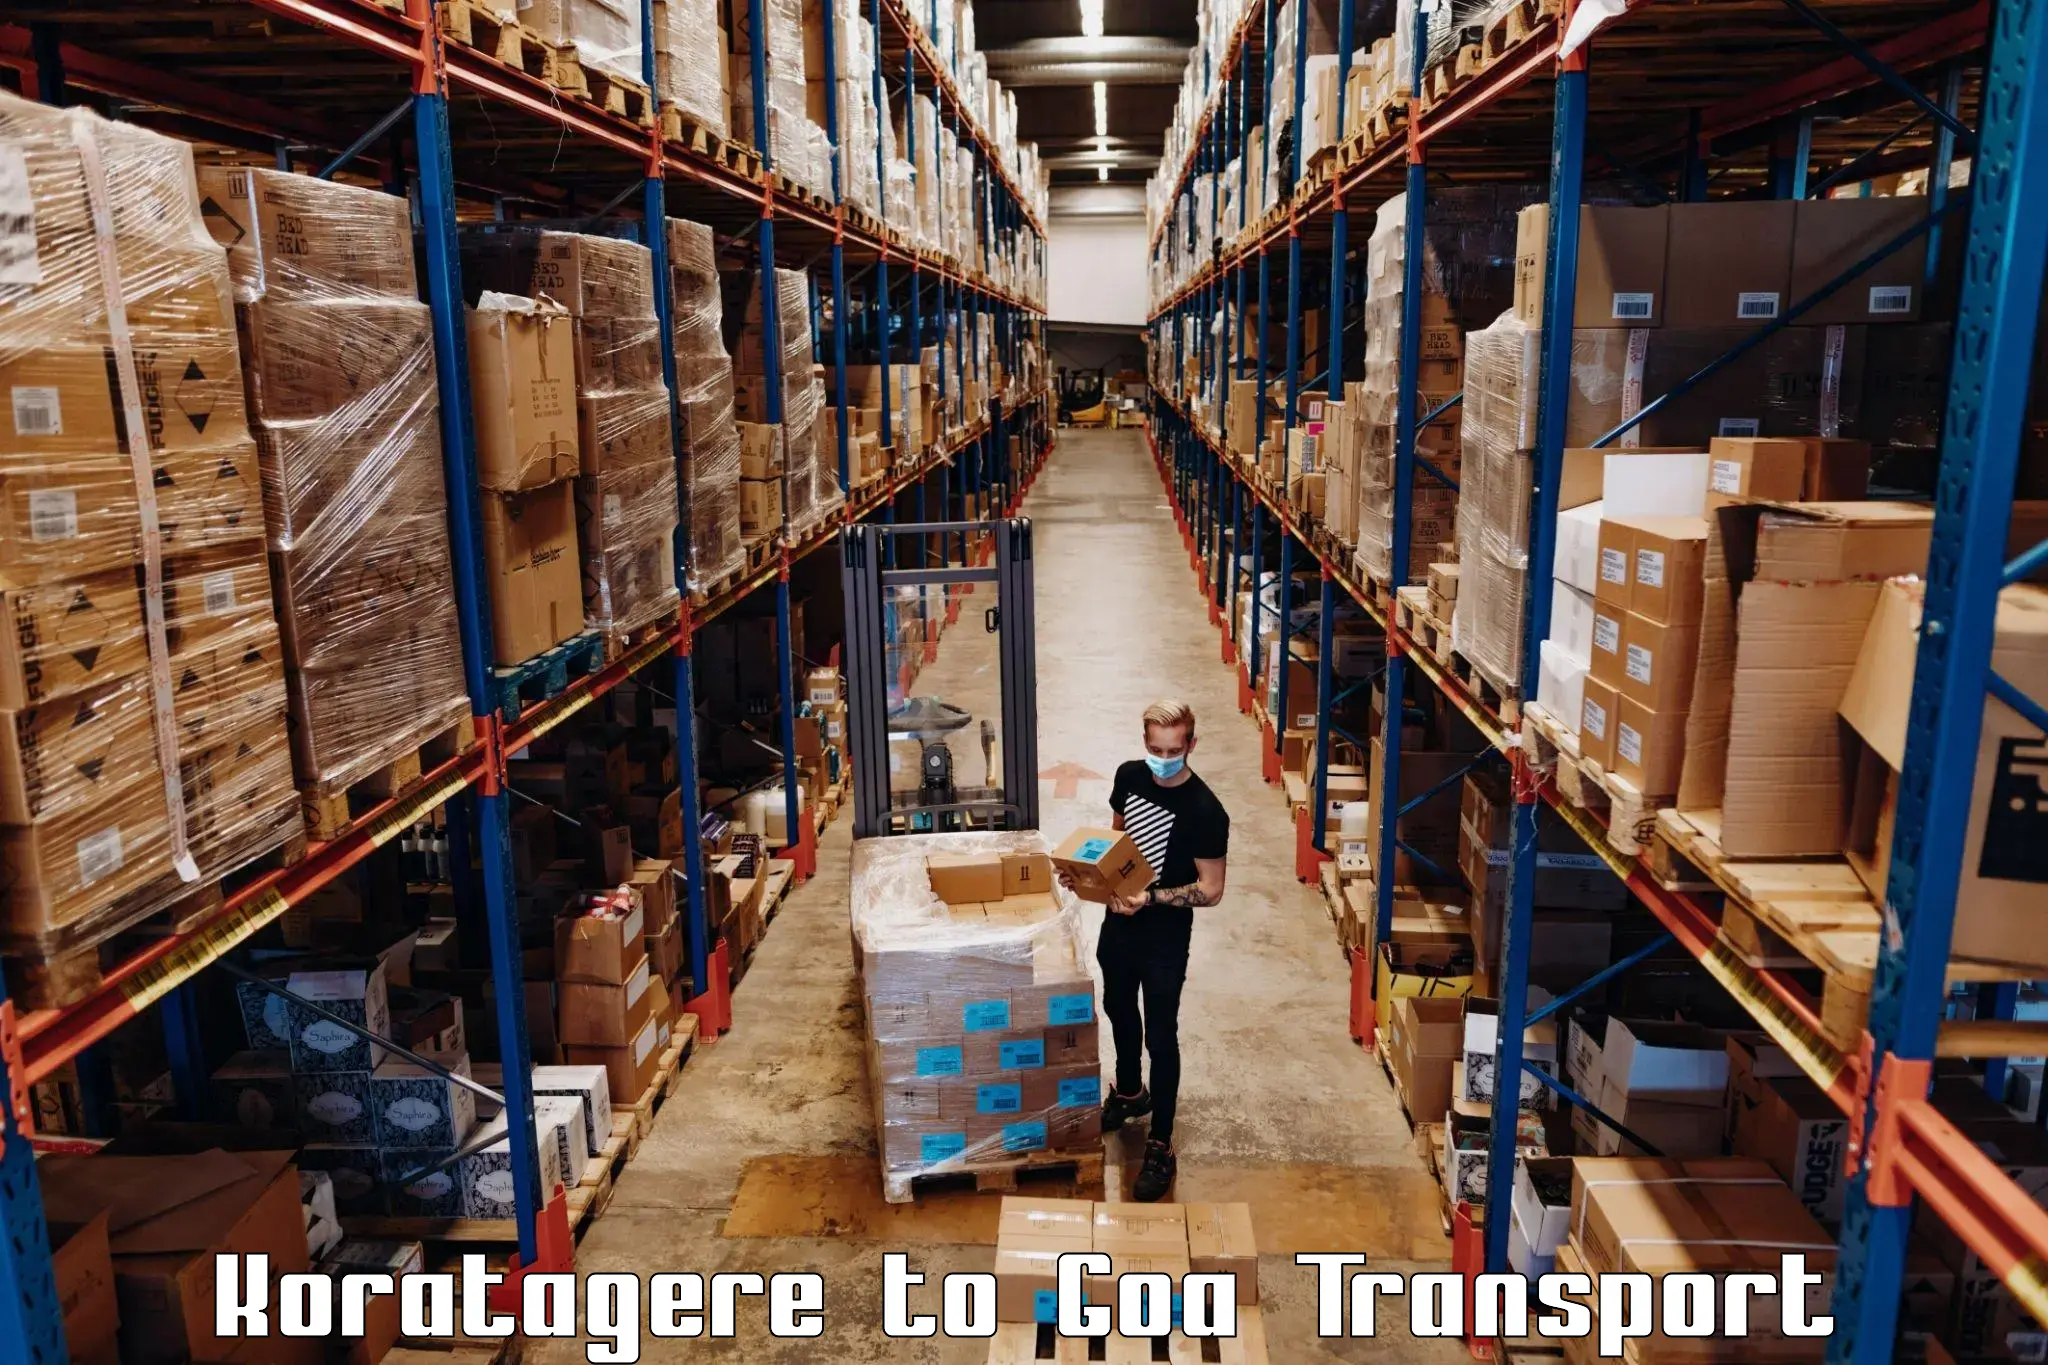 International cargo transportation services Koratagere to Bardez